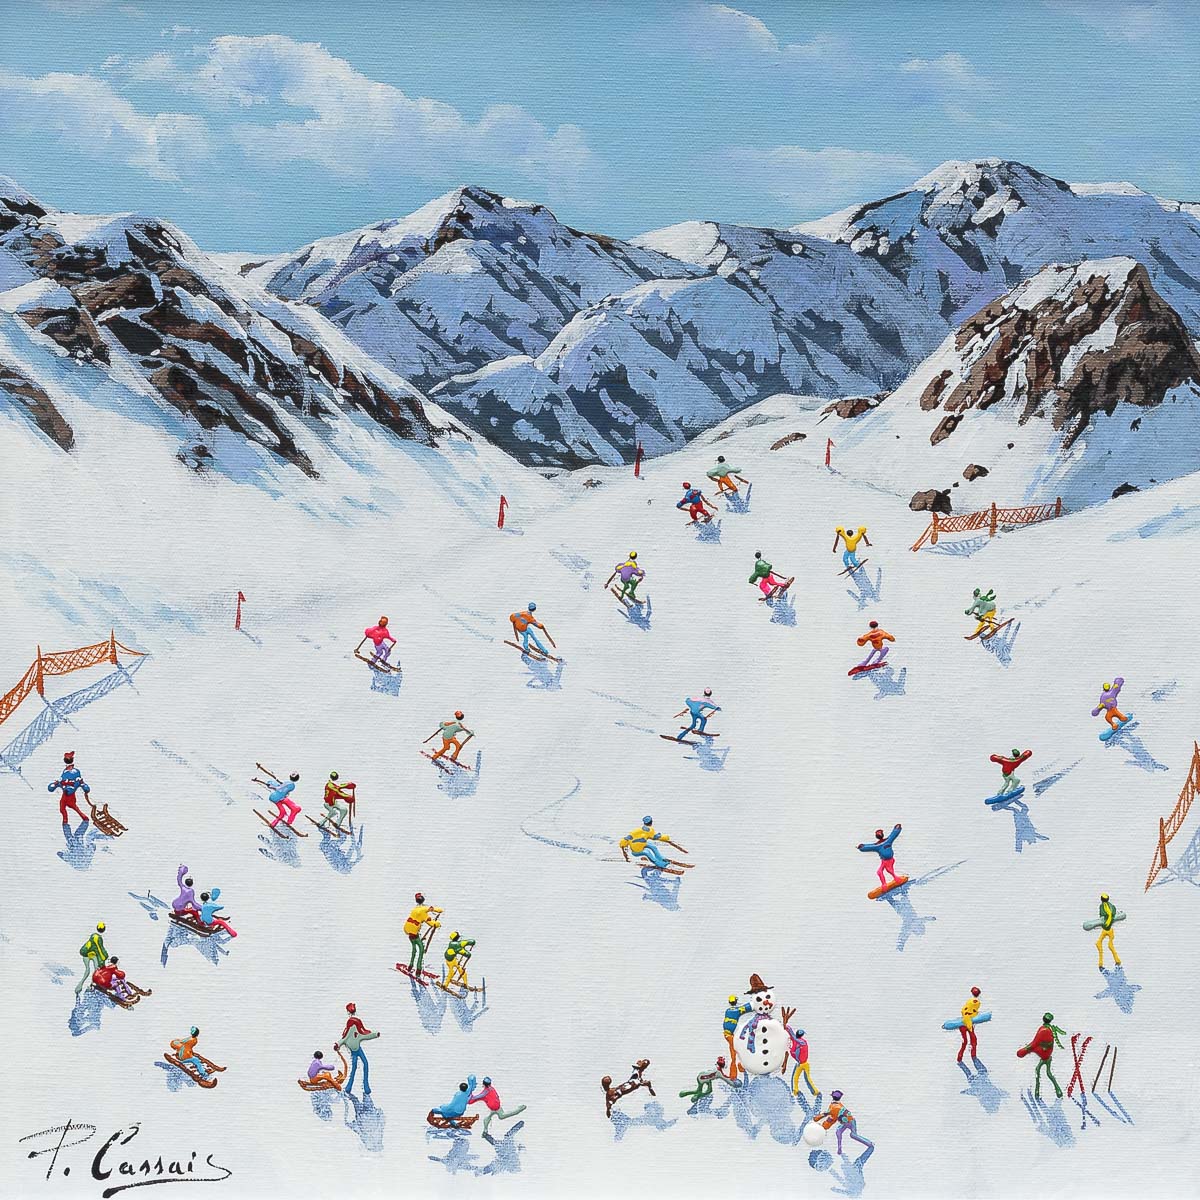 Ski Like There's No Tomorrow - Original Paola Cassais Original